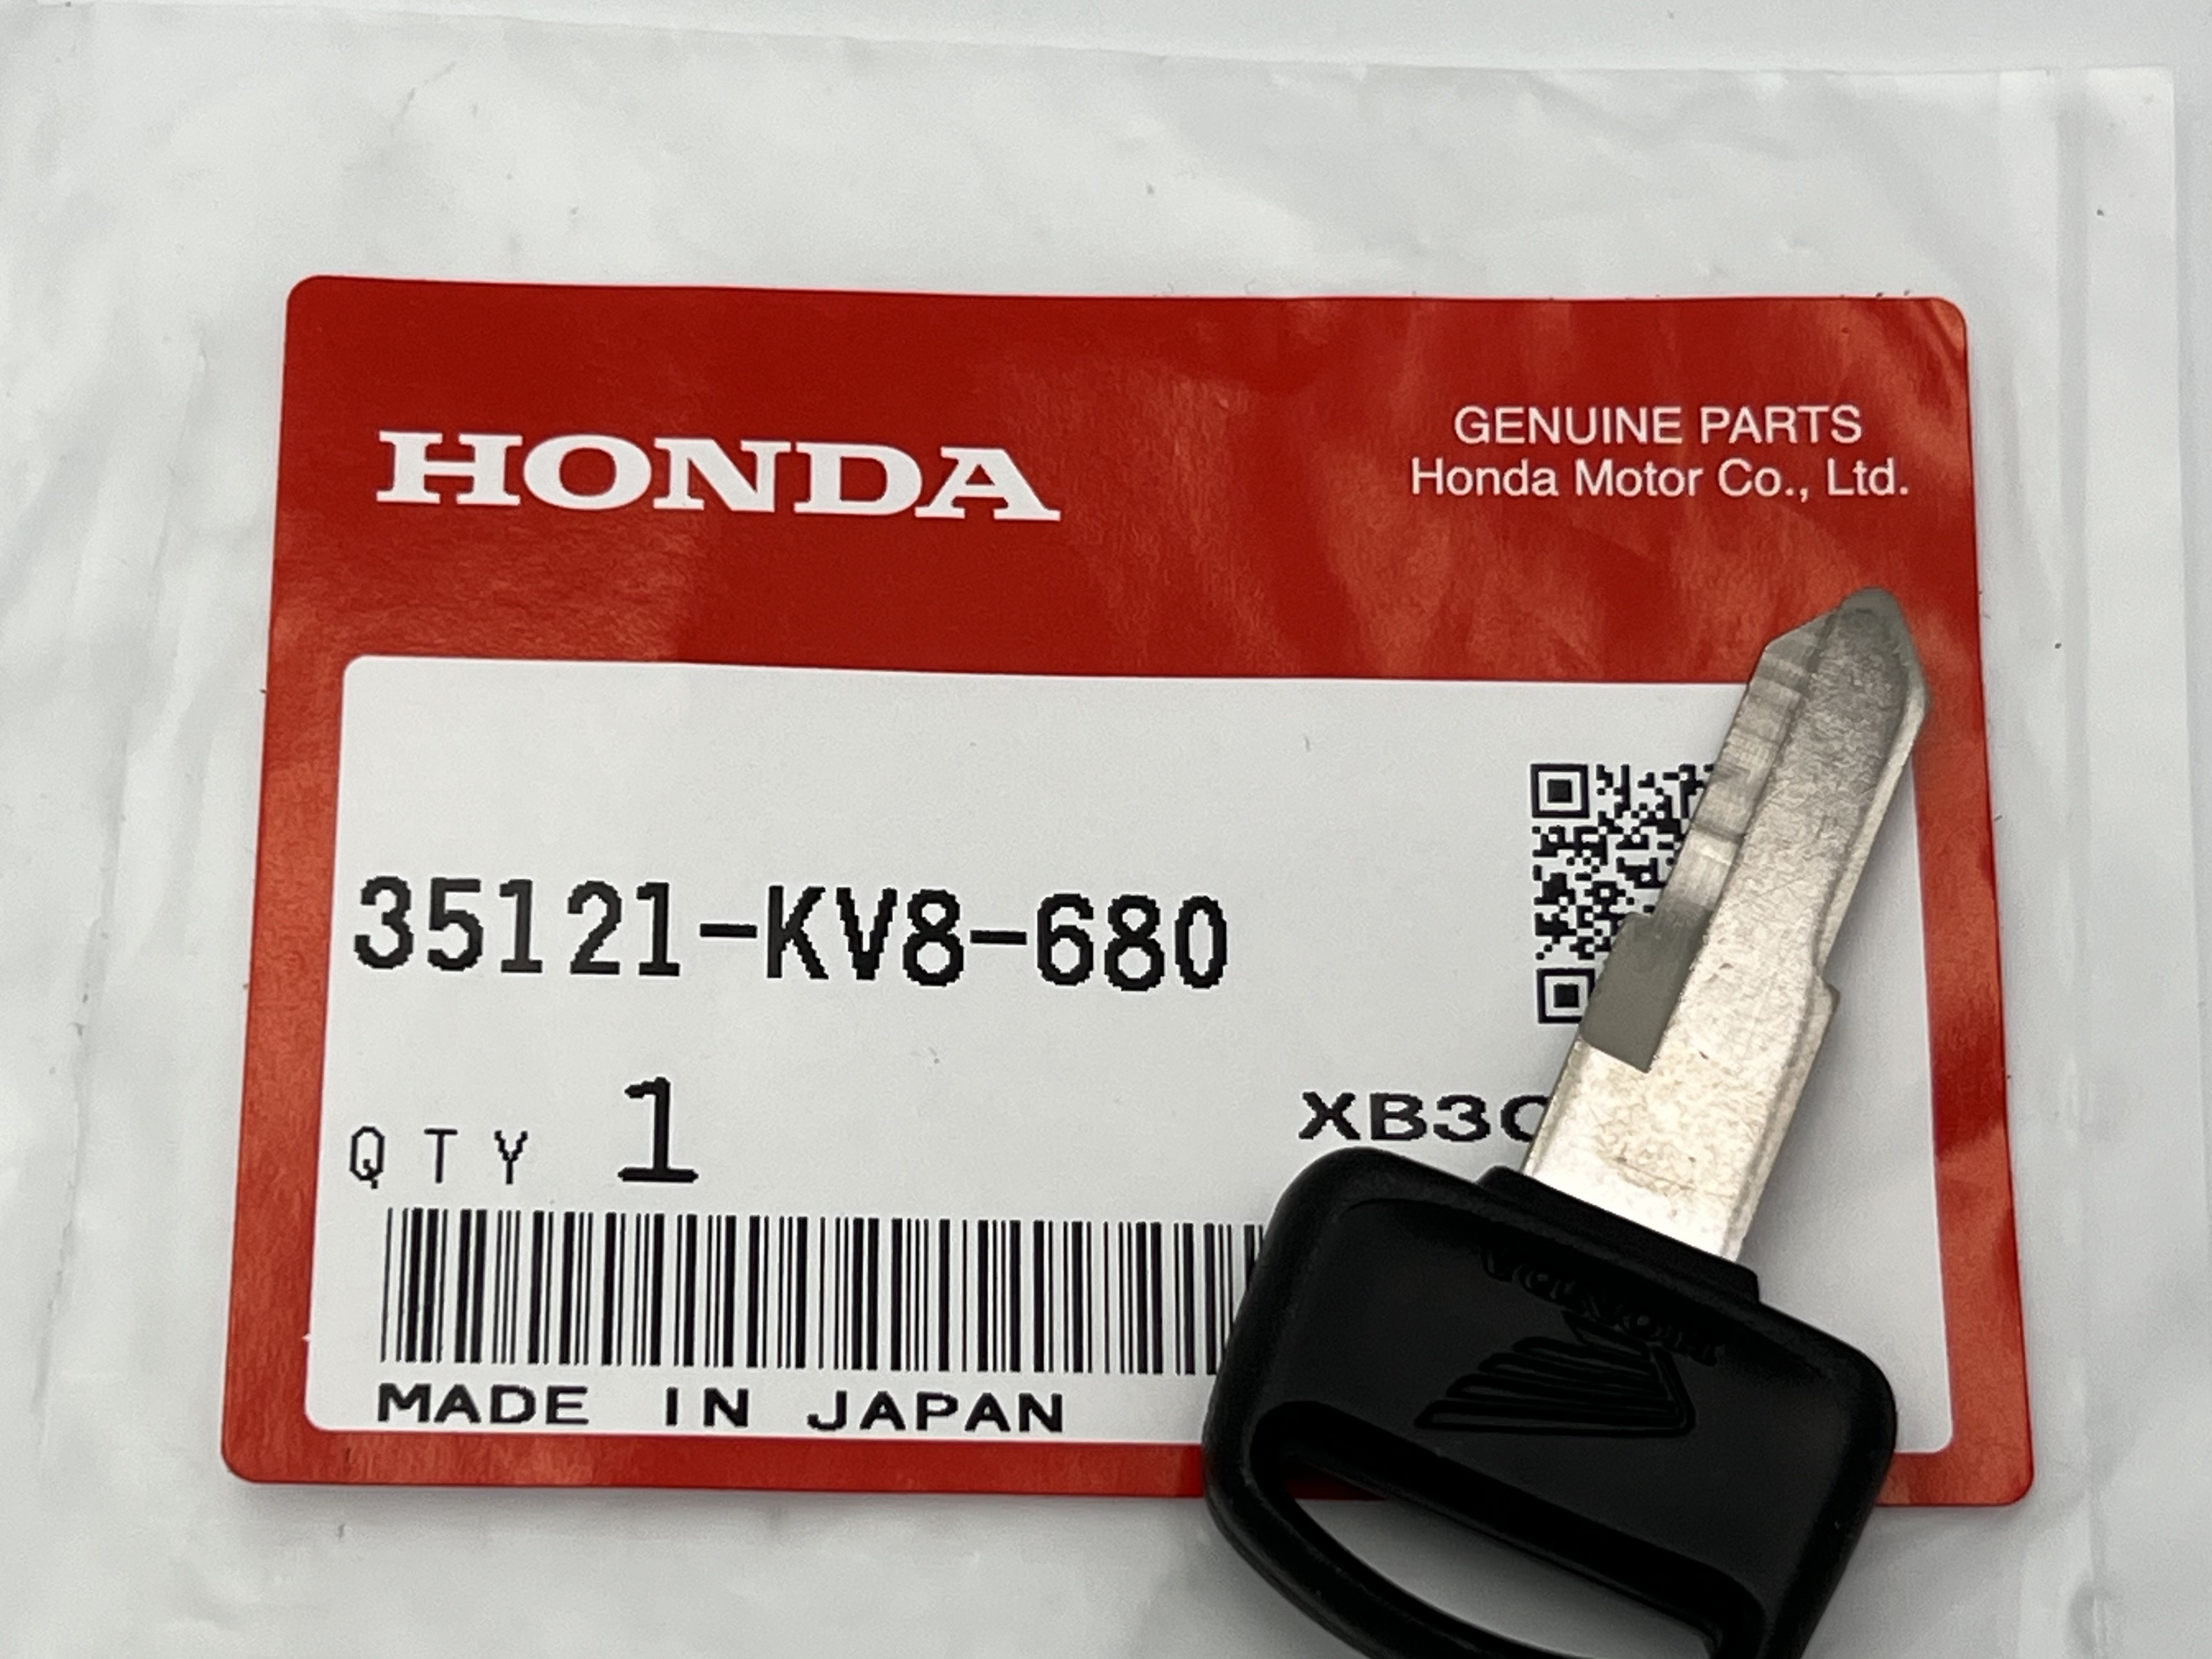 Купить Заготовка ключа Honda 35121-KV8-680 в интернет-магазине zipmoto.ru | Интернет-магазин для японских скутеров